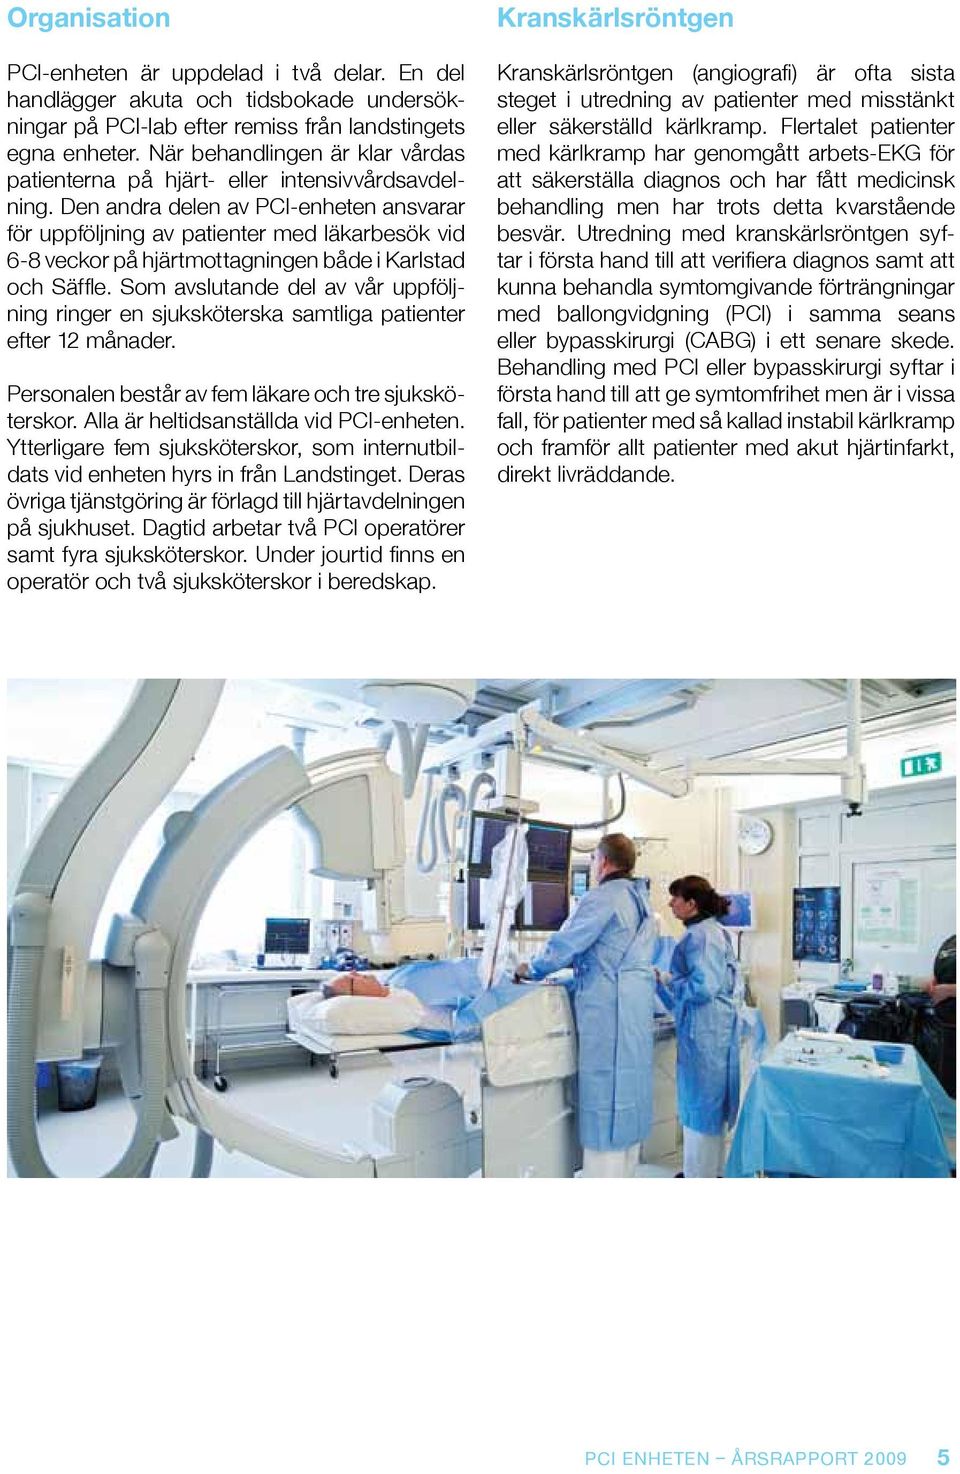 Den andra delen av PCI-enheten ansvarar för uppföljning av patienter med läkarbesök vid 6-8 veckor på hjärtmottagningen både i Karlstad och Säffle.